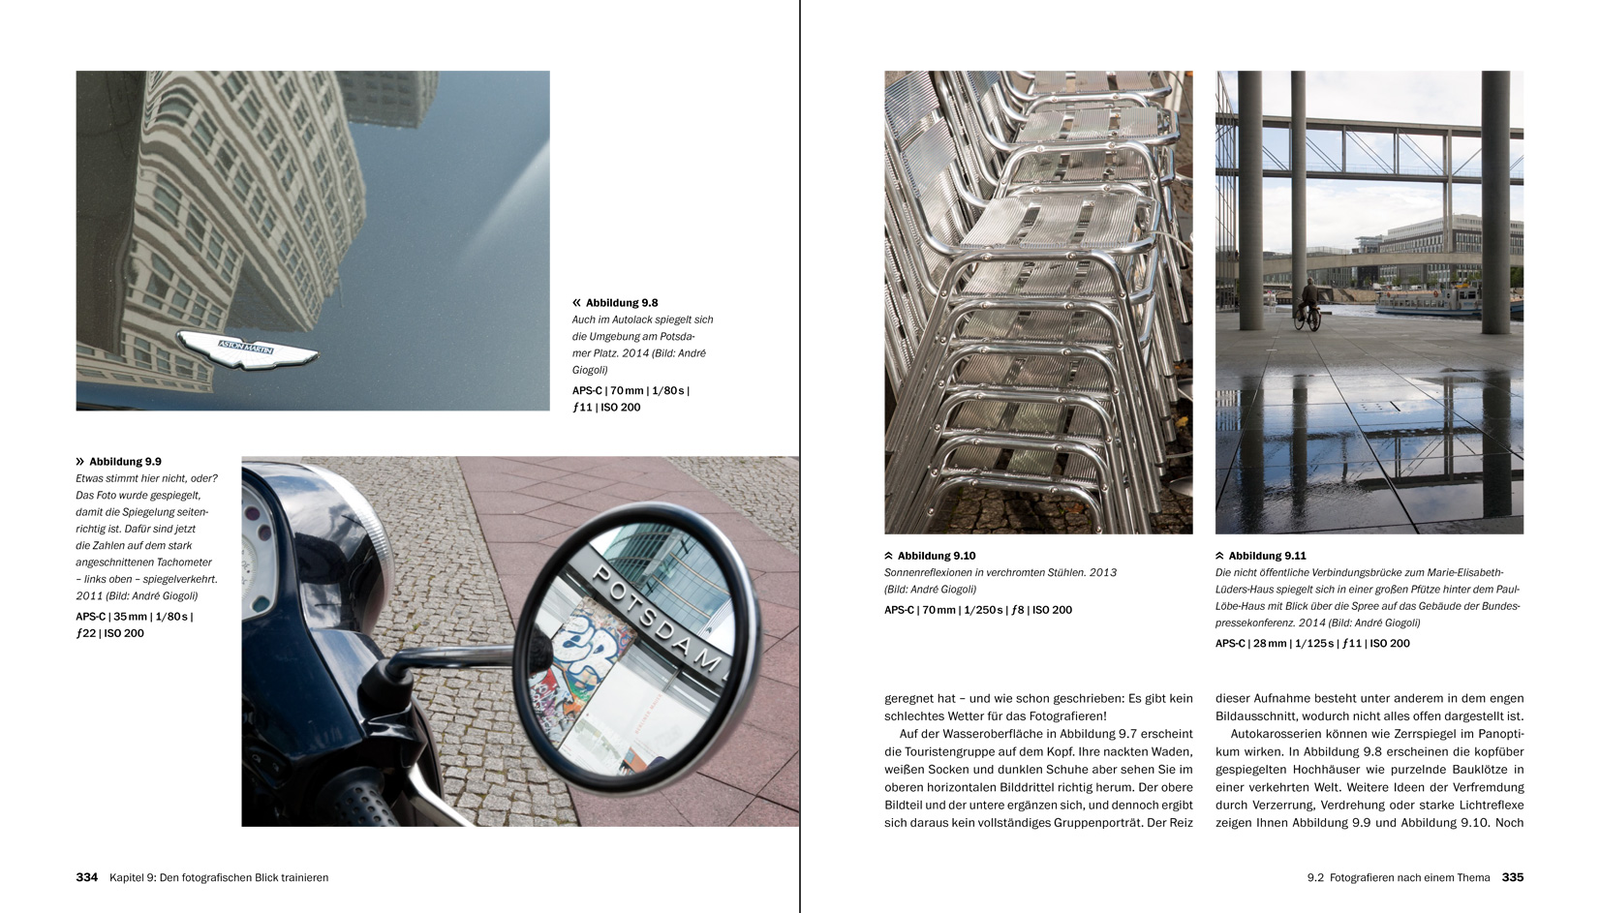 Bildgestaltung - Die große Fotoschule (2. Auflage)